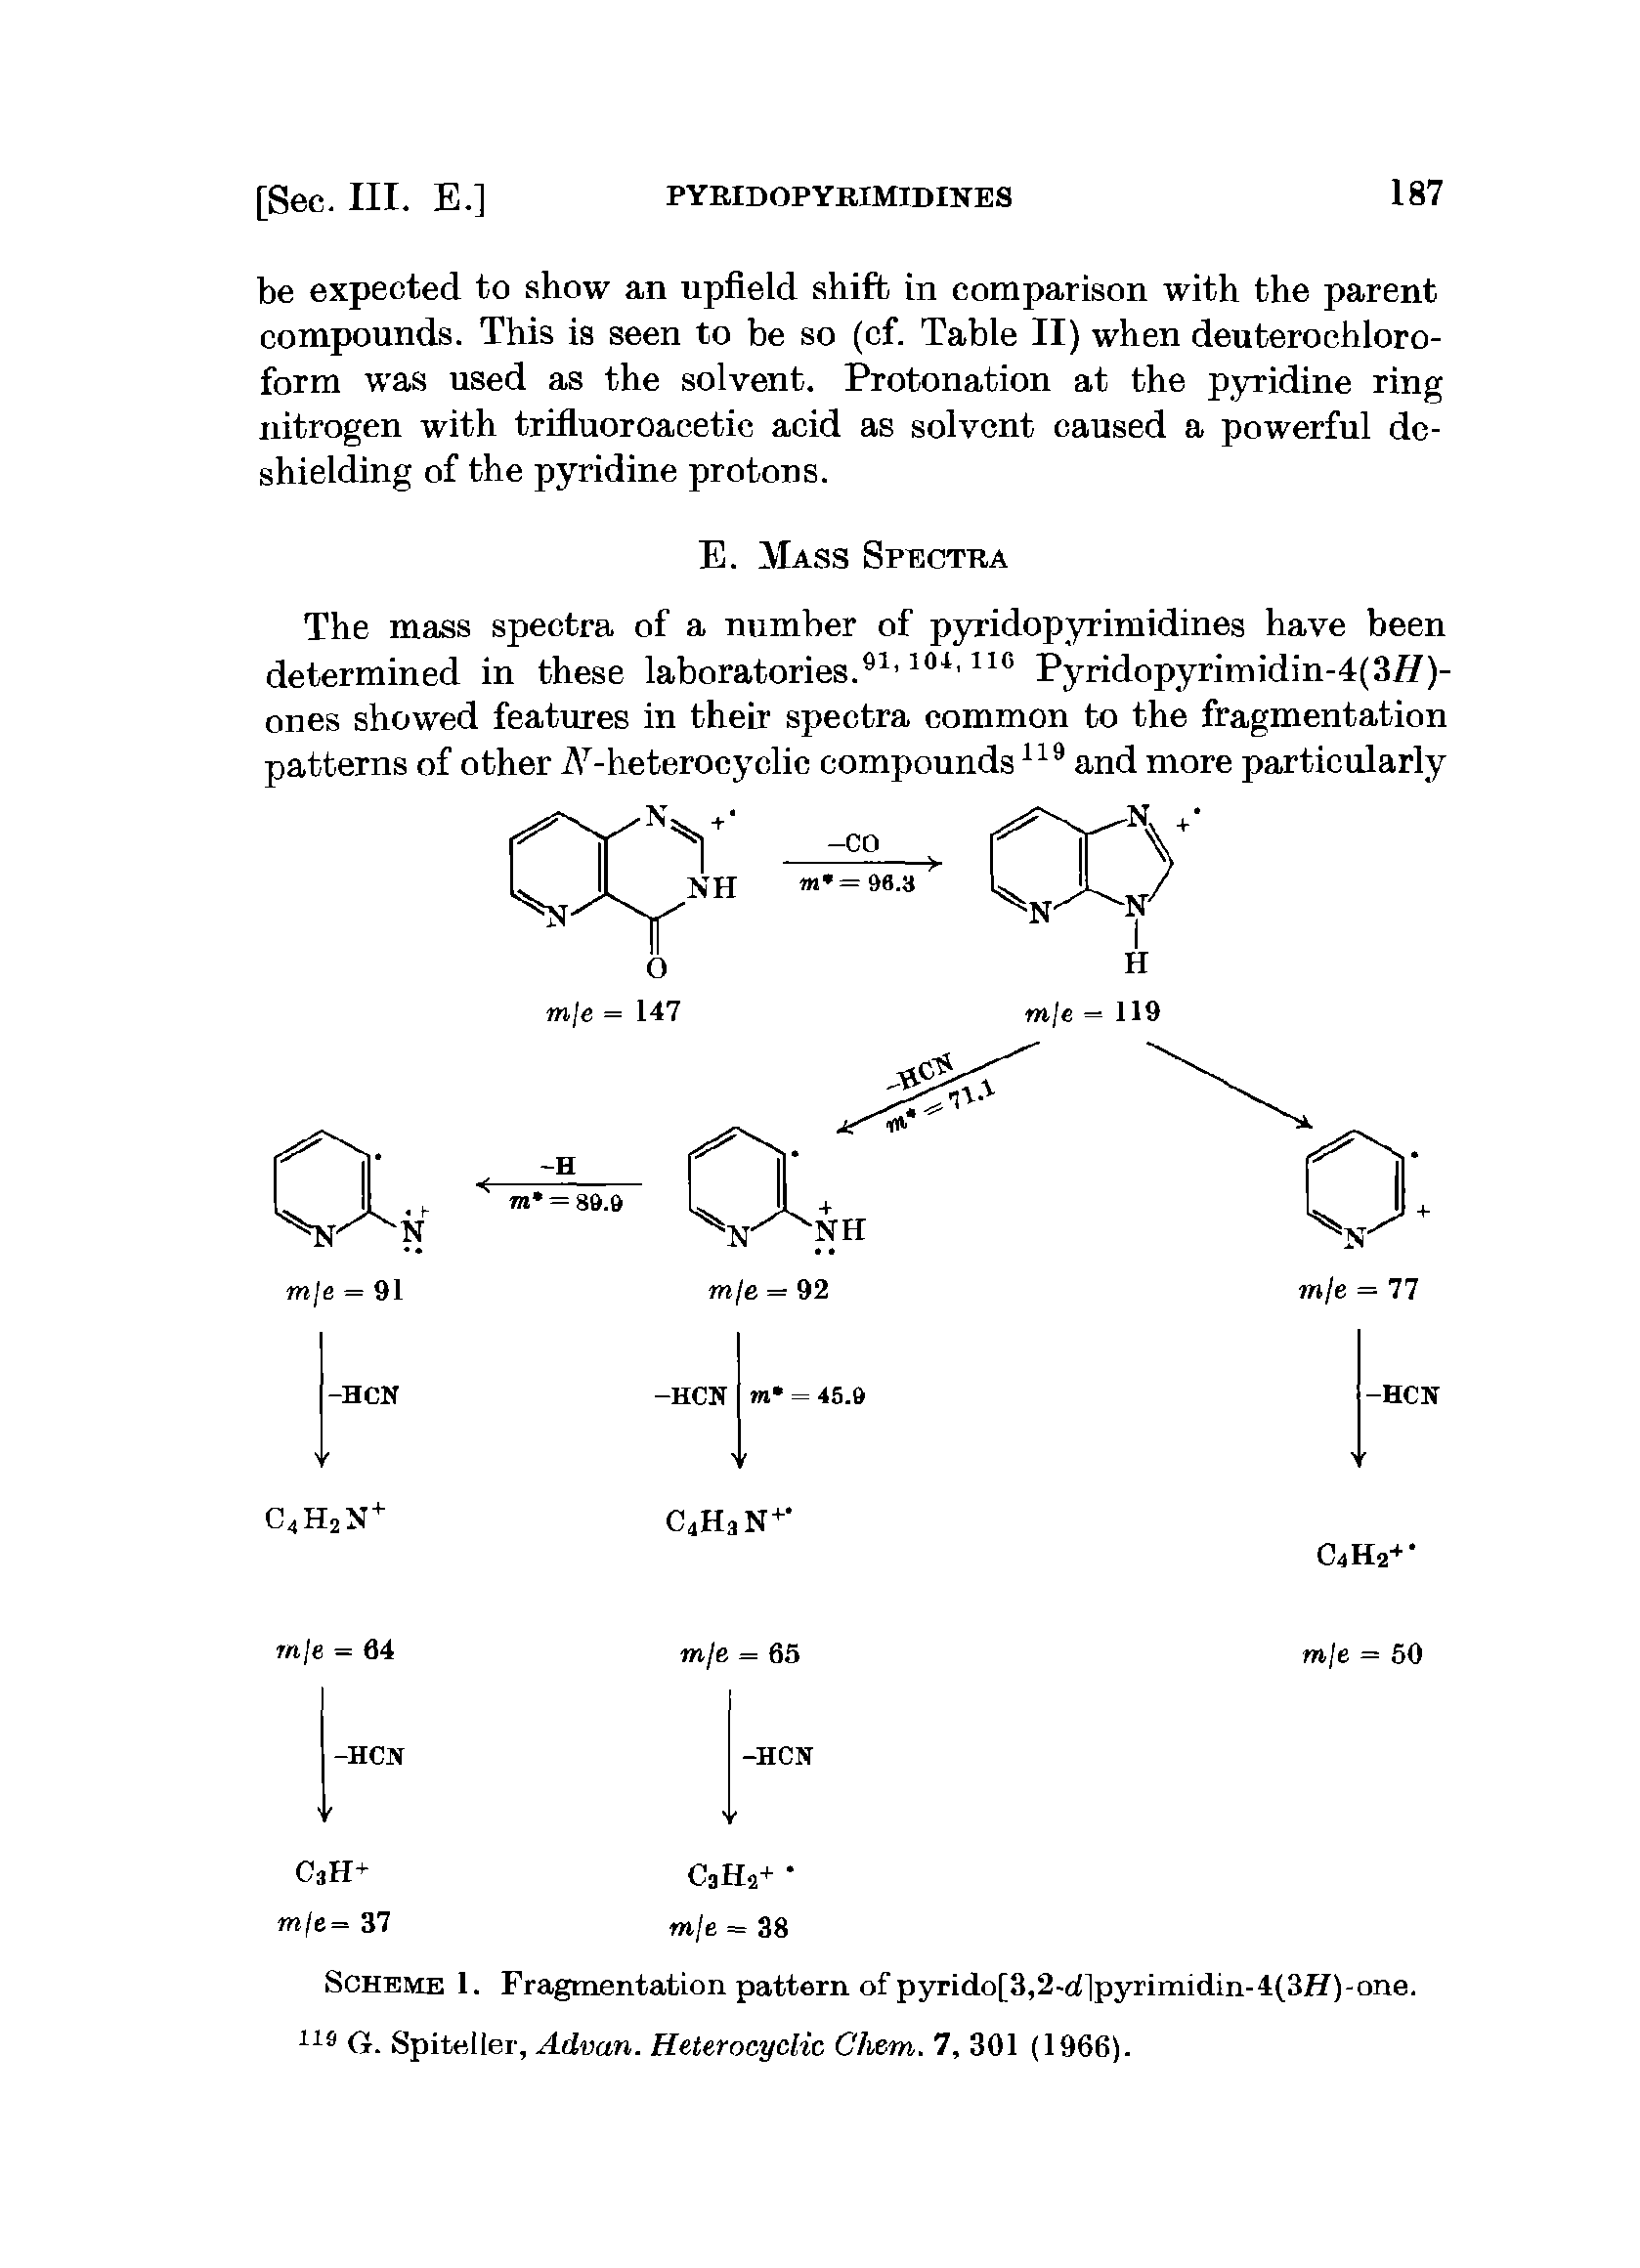 Scheme 1. Fragmentation pattern of pyrido[3,2-c ]pyrimidin-4(3H)-one, (t. Spiteller, Advan. Heterocyclic Chem. 7, 301 (1966).